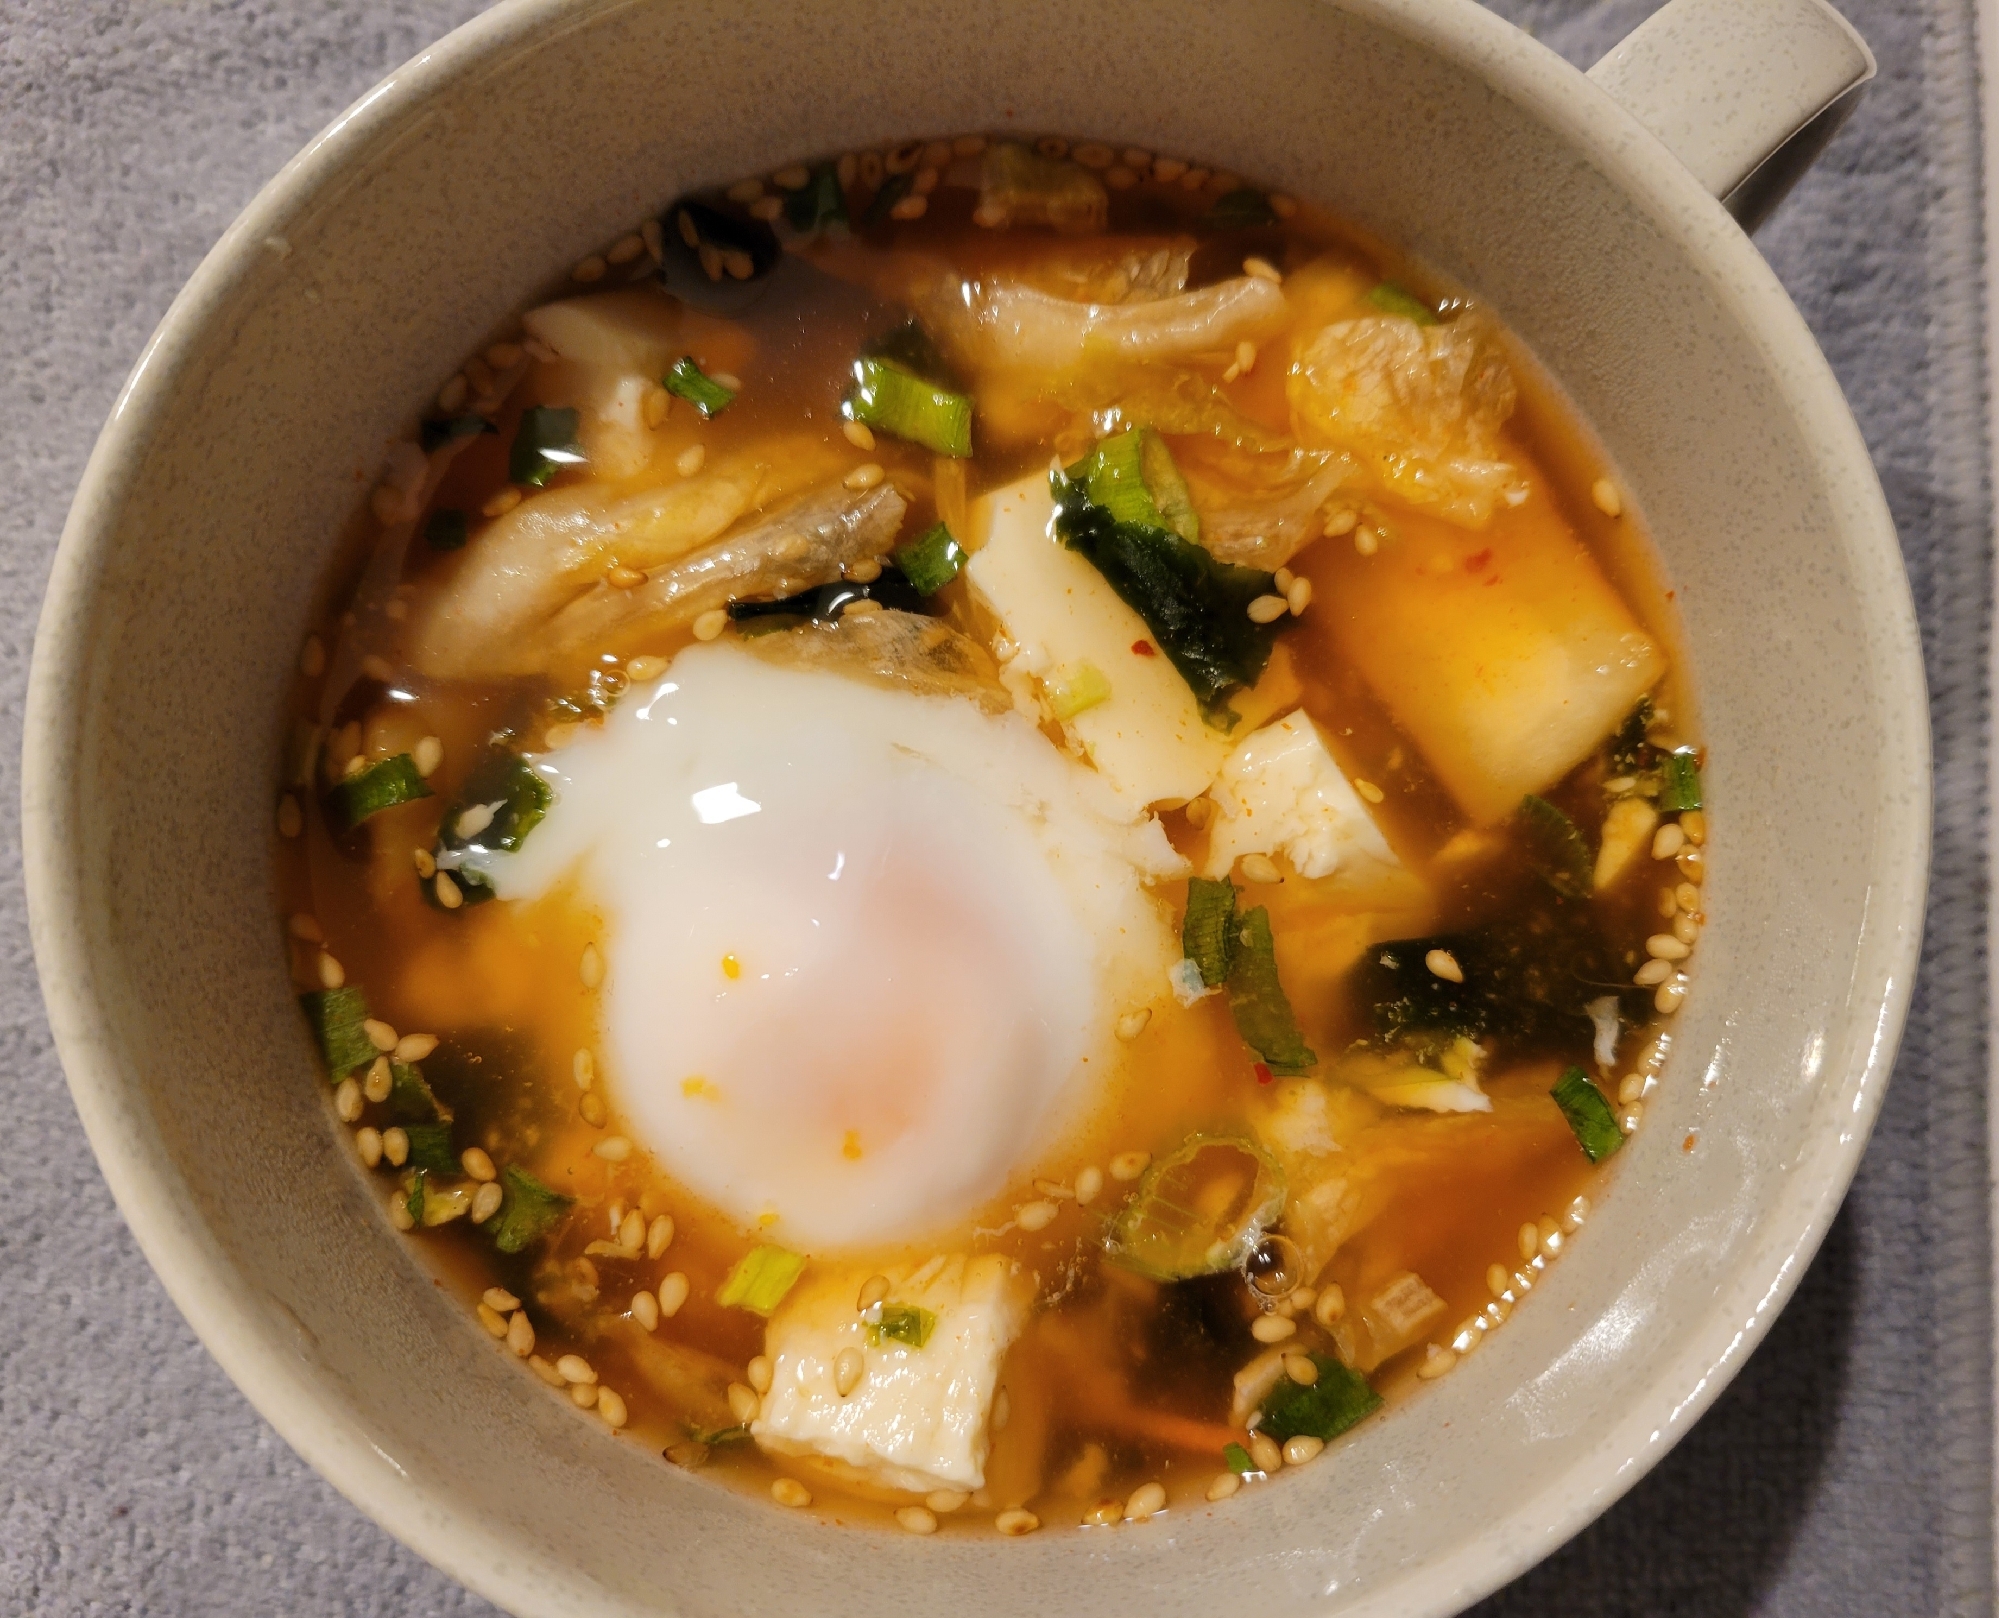 韓国風☆キムチわかめスープ卵入り